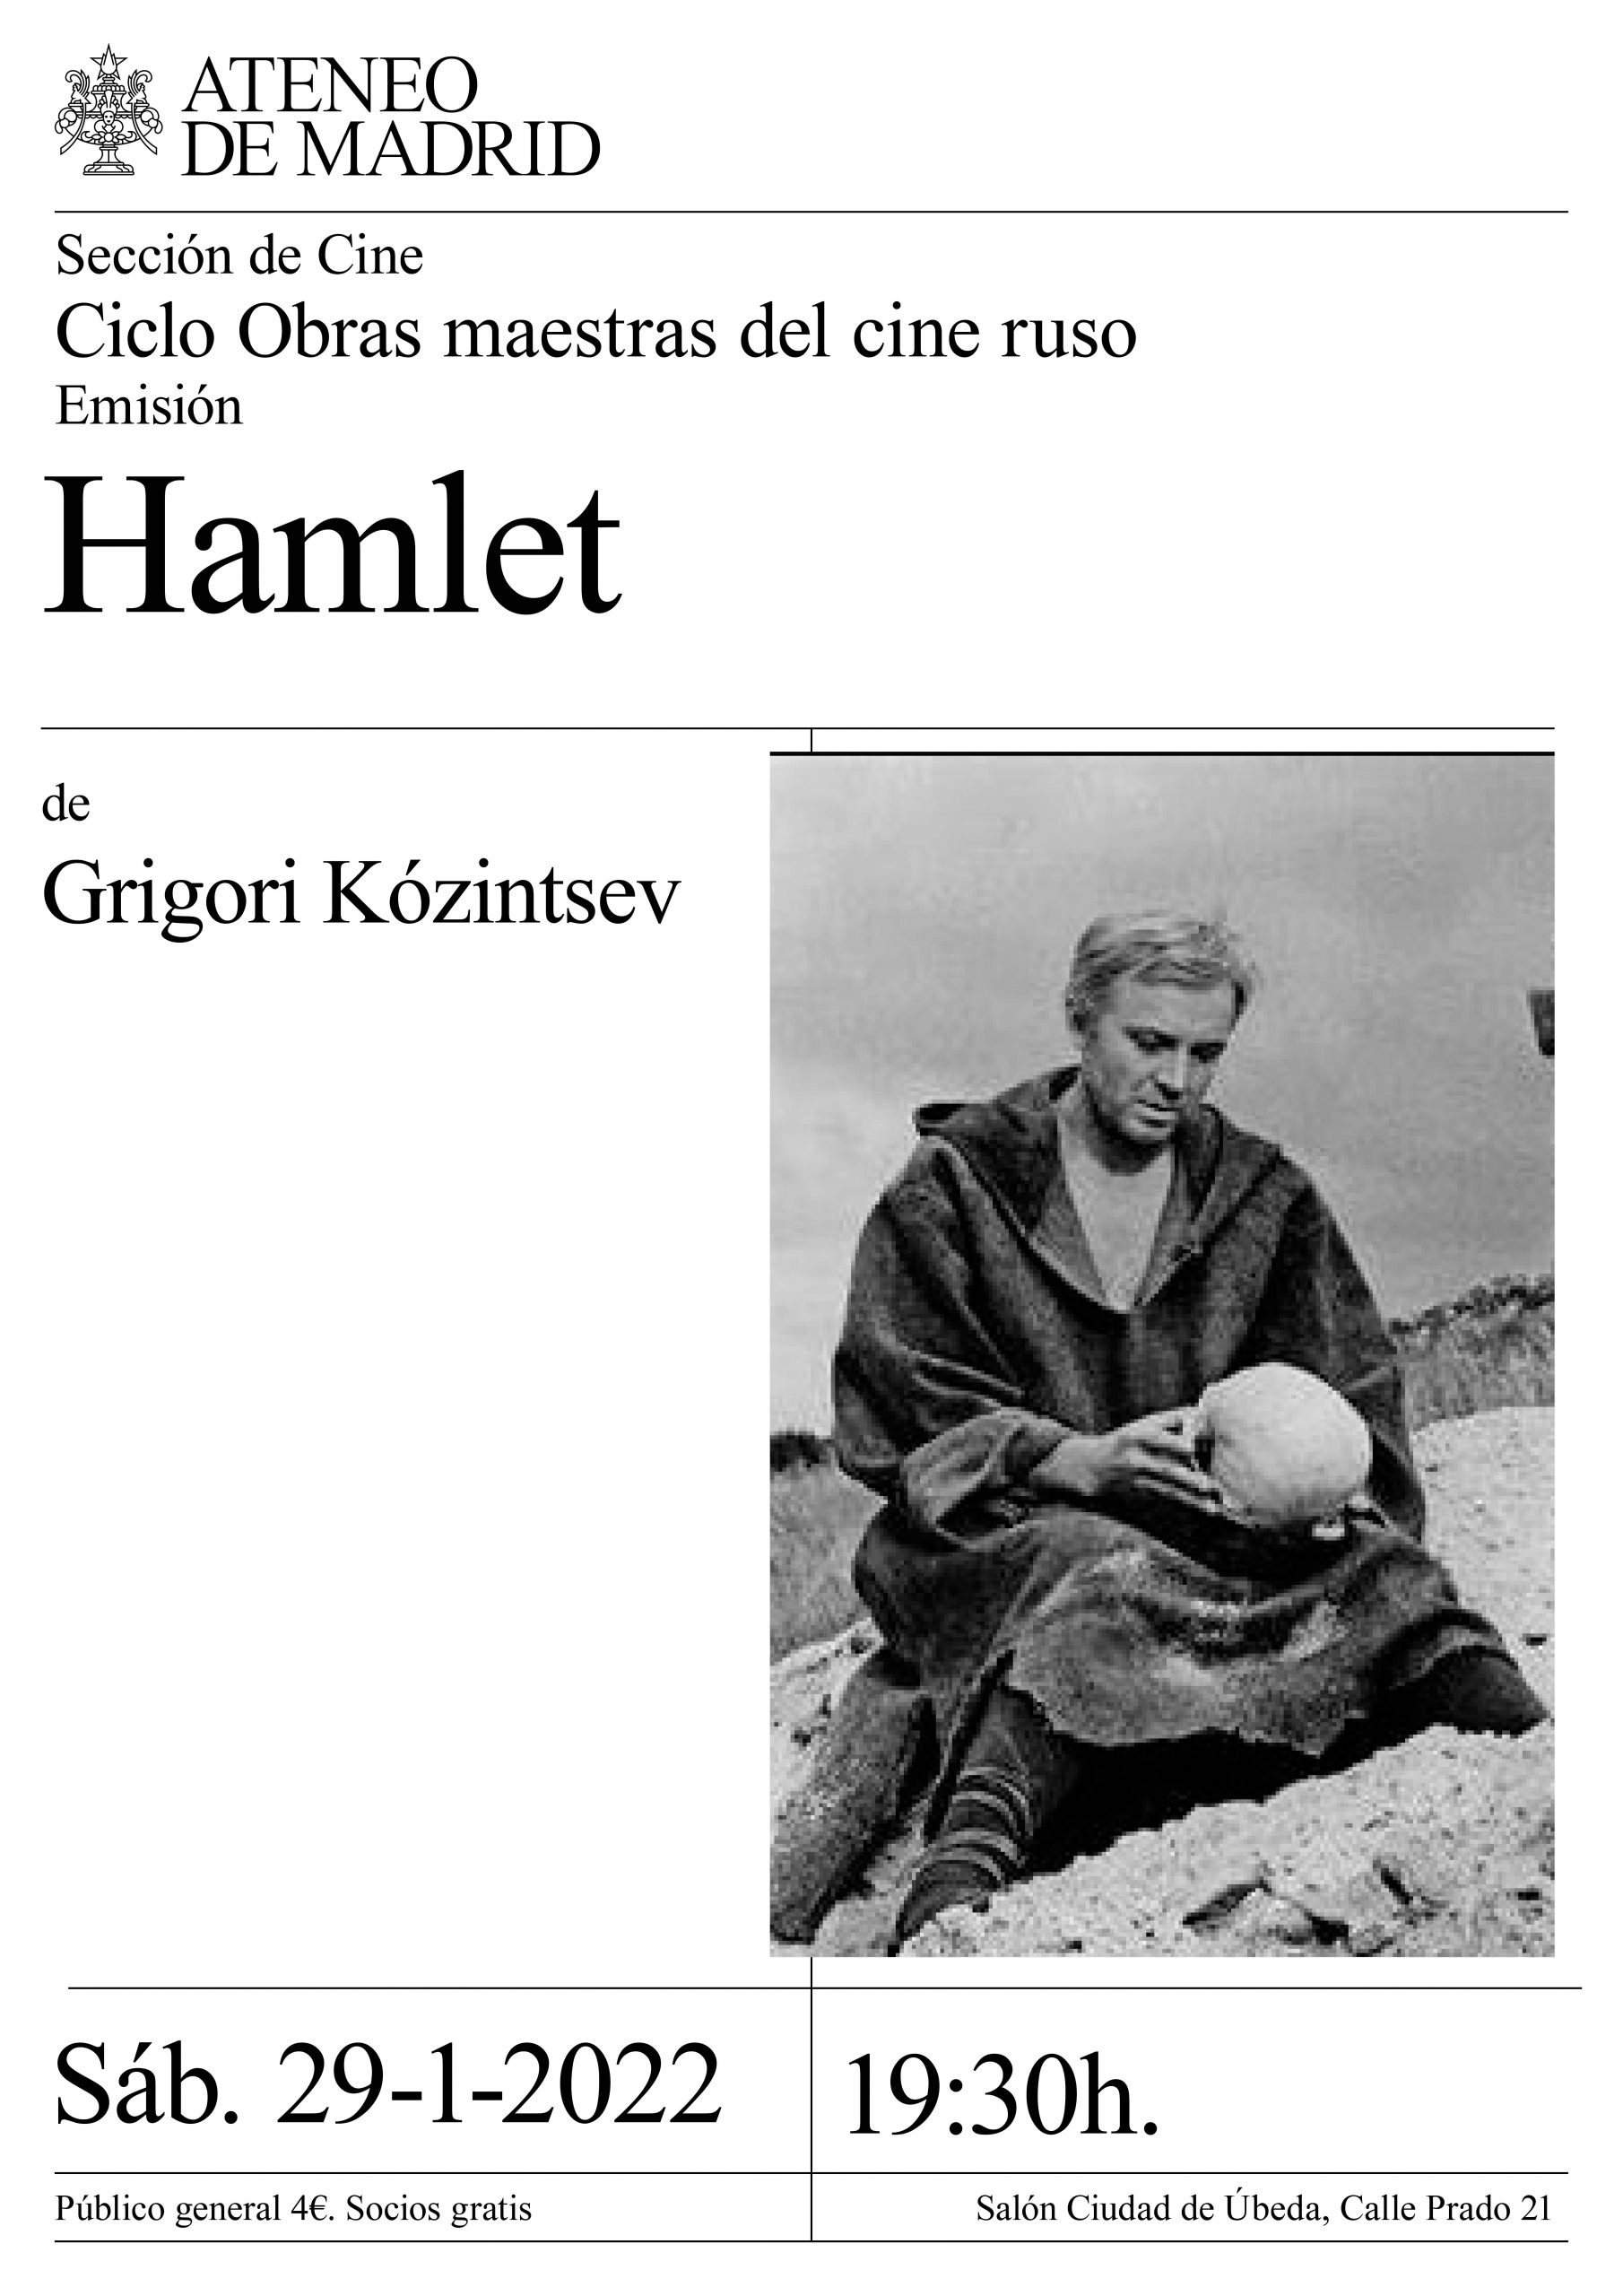 Emisión de Hamlet de Grigori Kózintsev